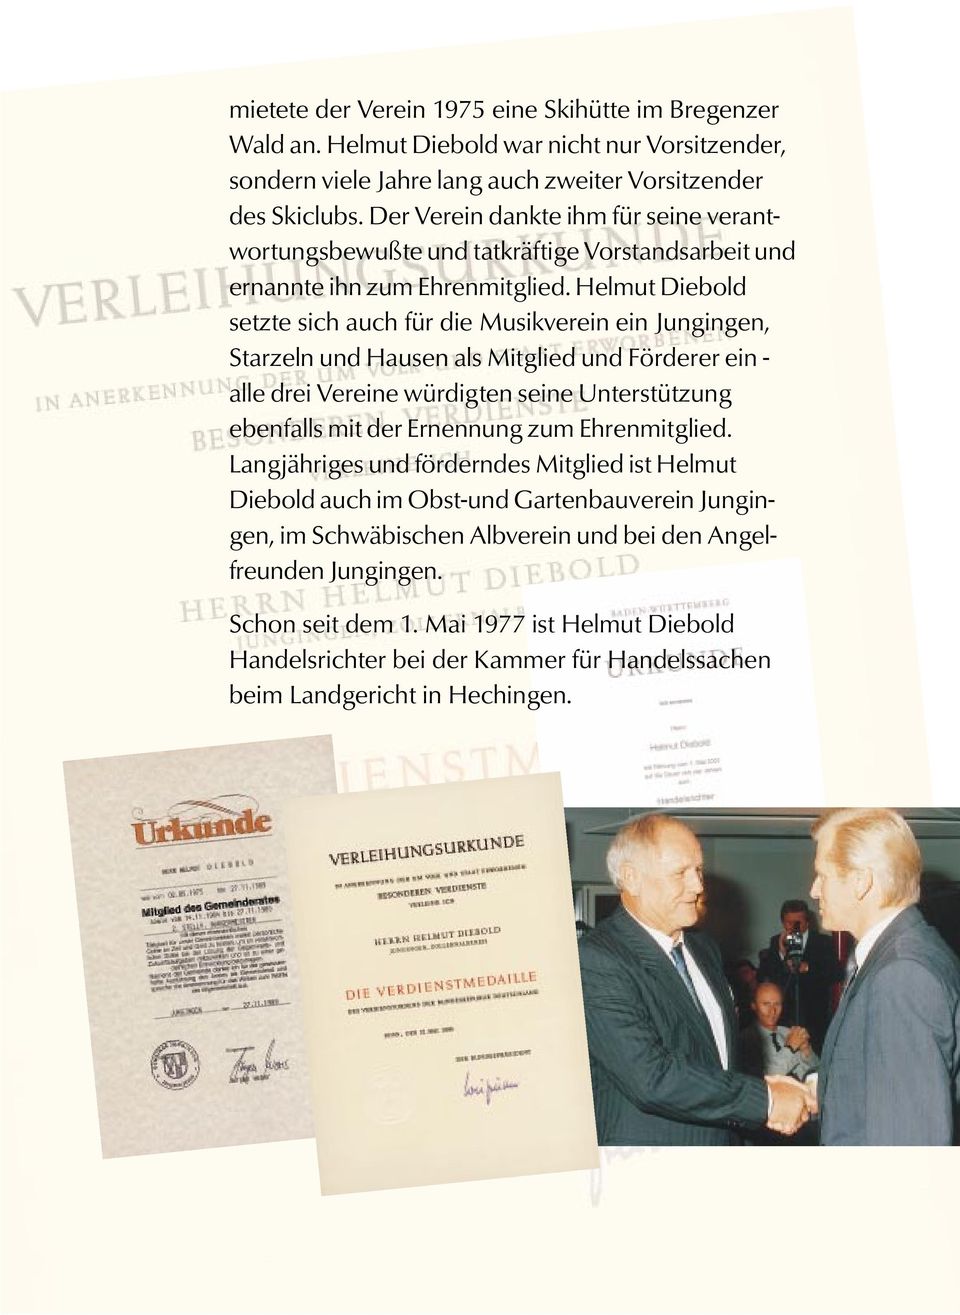 Helmut Diebold setzte sich auch für die Musikverein ein Jungingen, Starzeln und Hausen als Mitglied und Förderer ein - alle drei Vereine würdigten seine Unterstützung ebenfalls mit der Ernennung